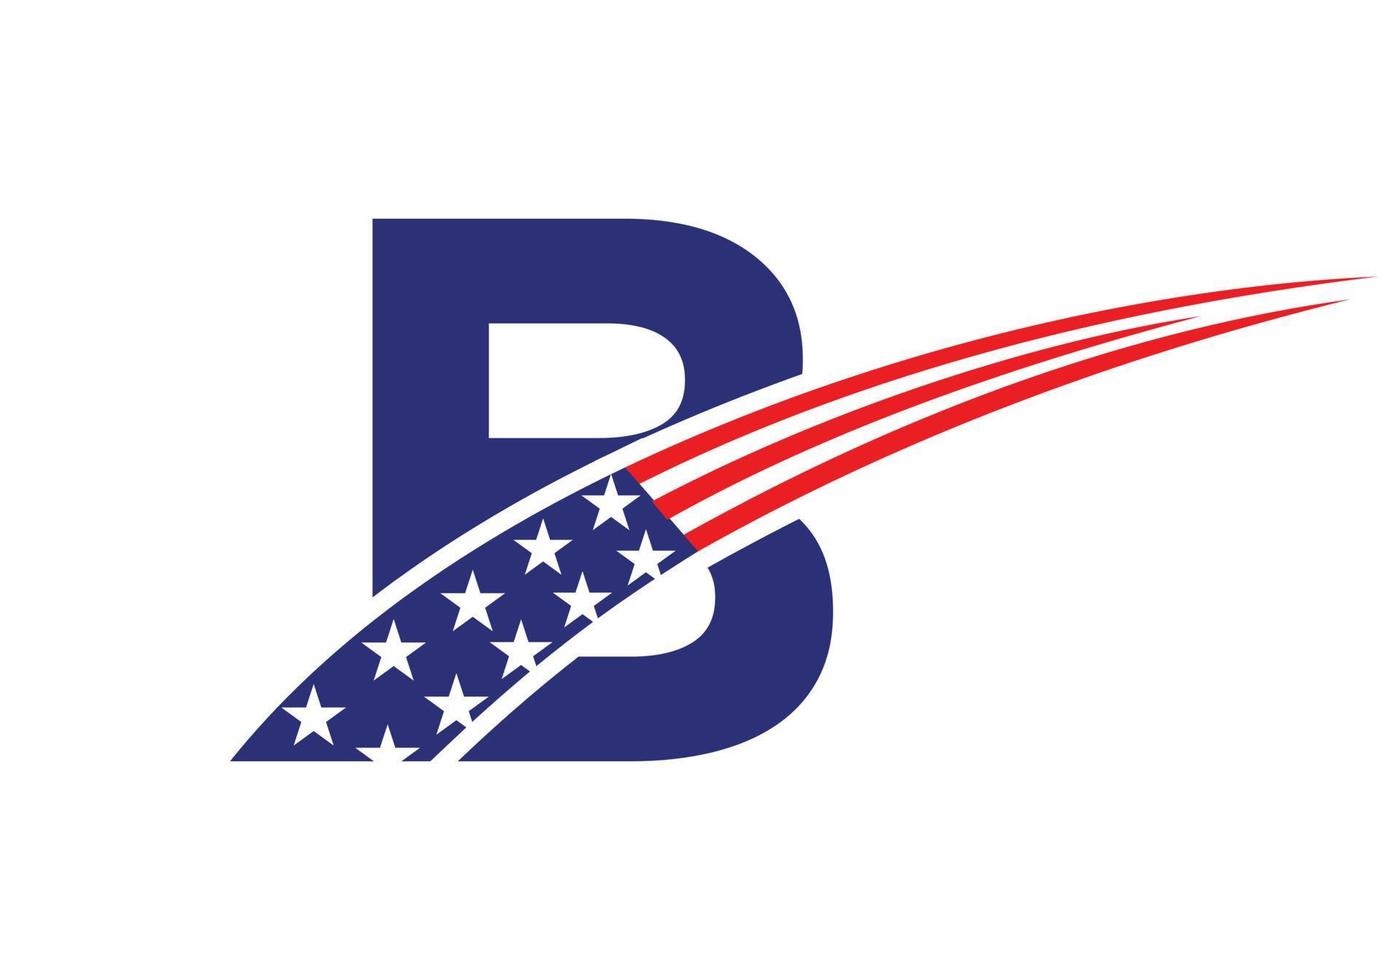 iniziale lettera B americano logo. Stati Uniti d'America americano logo vettore